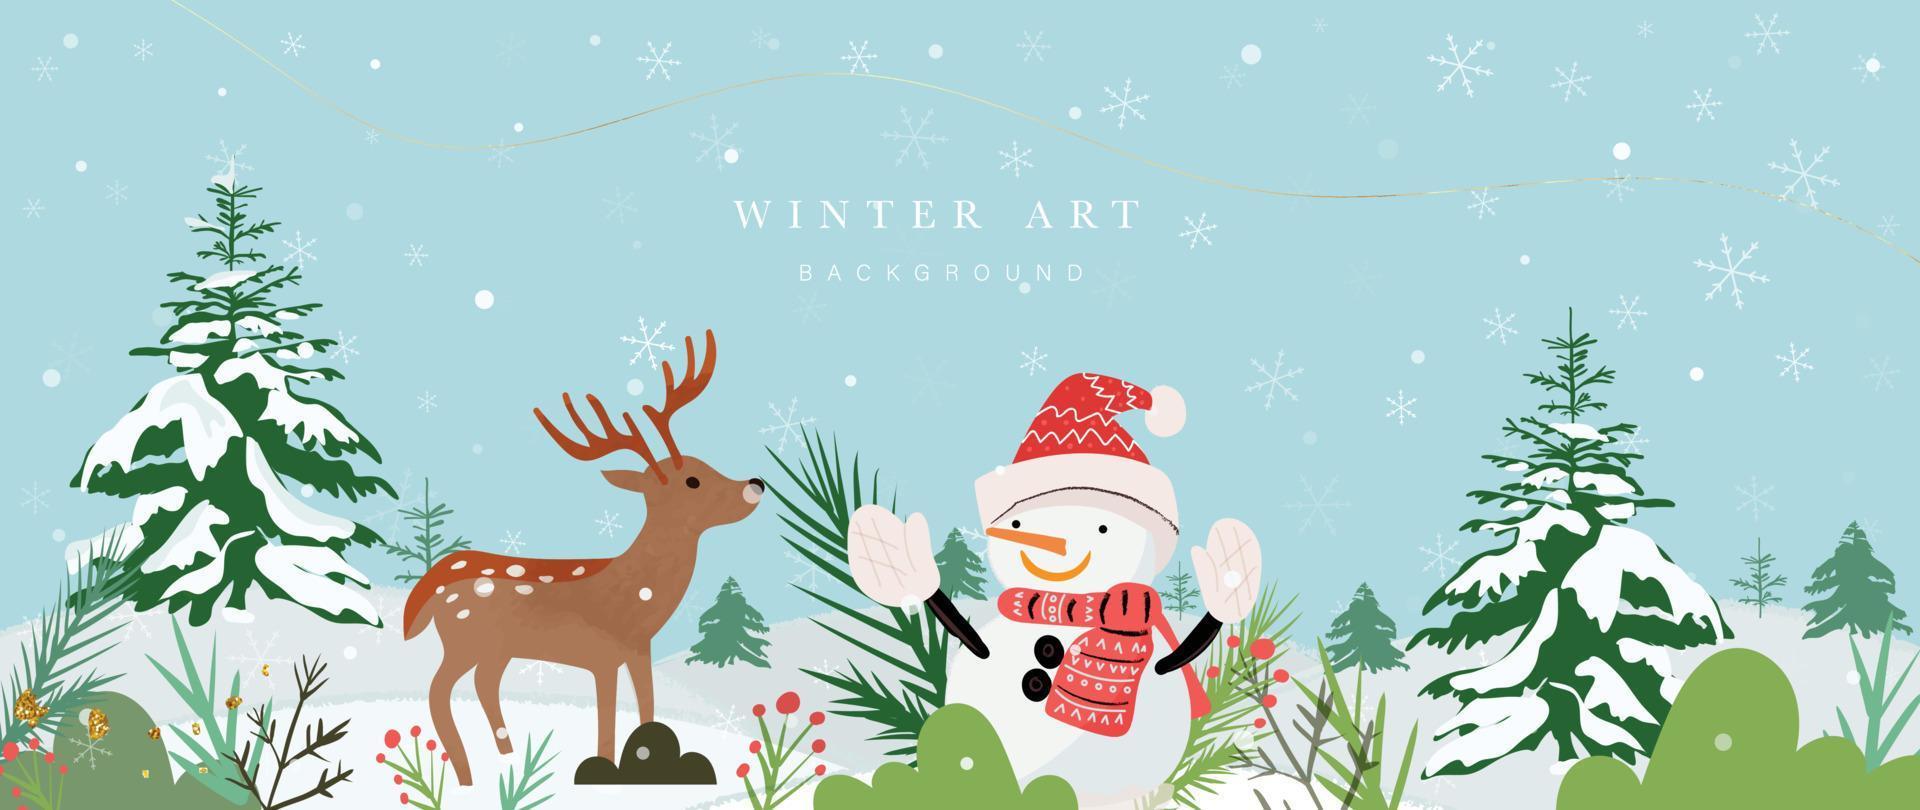 jul vinter- konst bakgrund vektor illustration. hand målad vinter- snöig landskap, tall träd, söt snögubbe, snöflingor, ren. design för skriva ut, dekoration, affisch, tapet, baner.